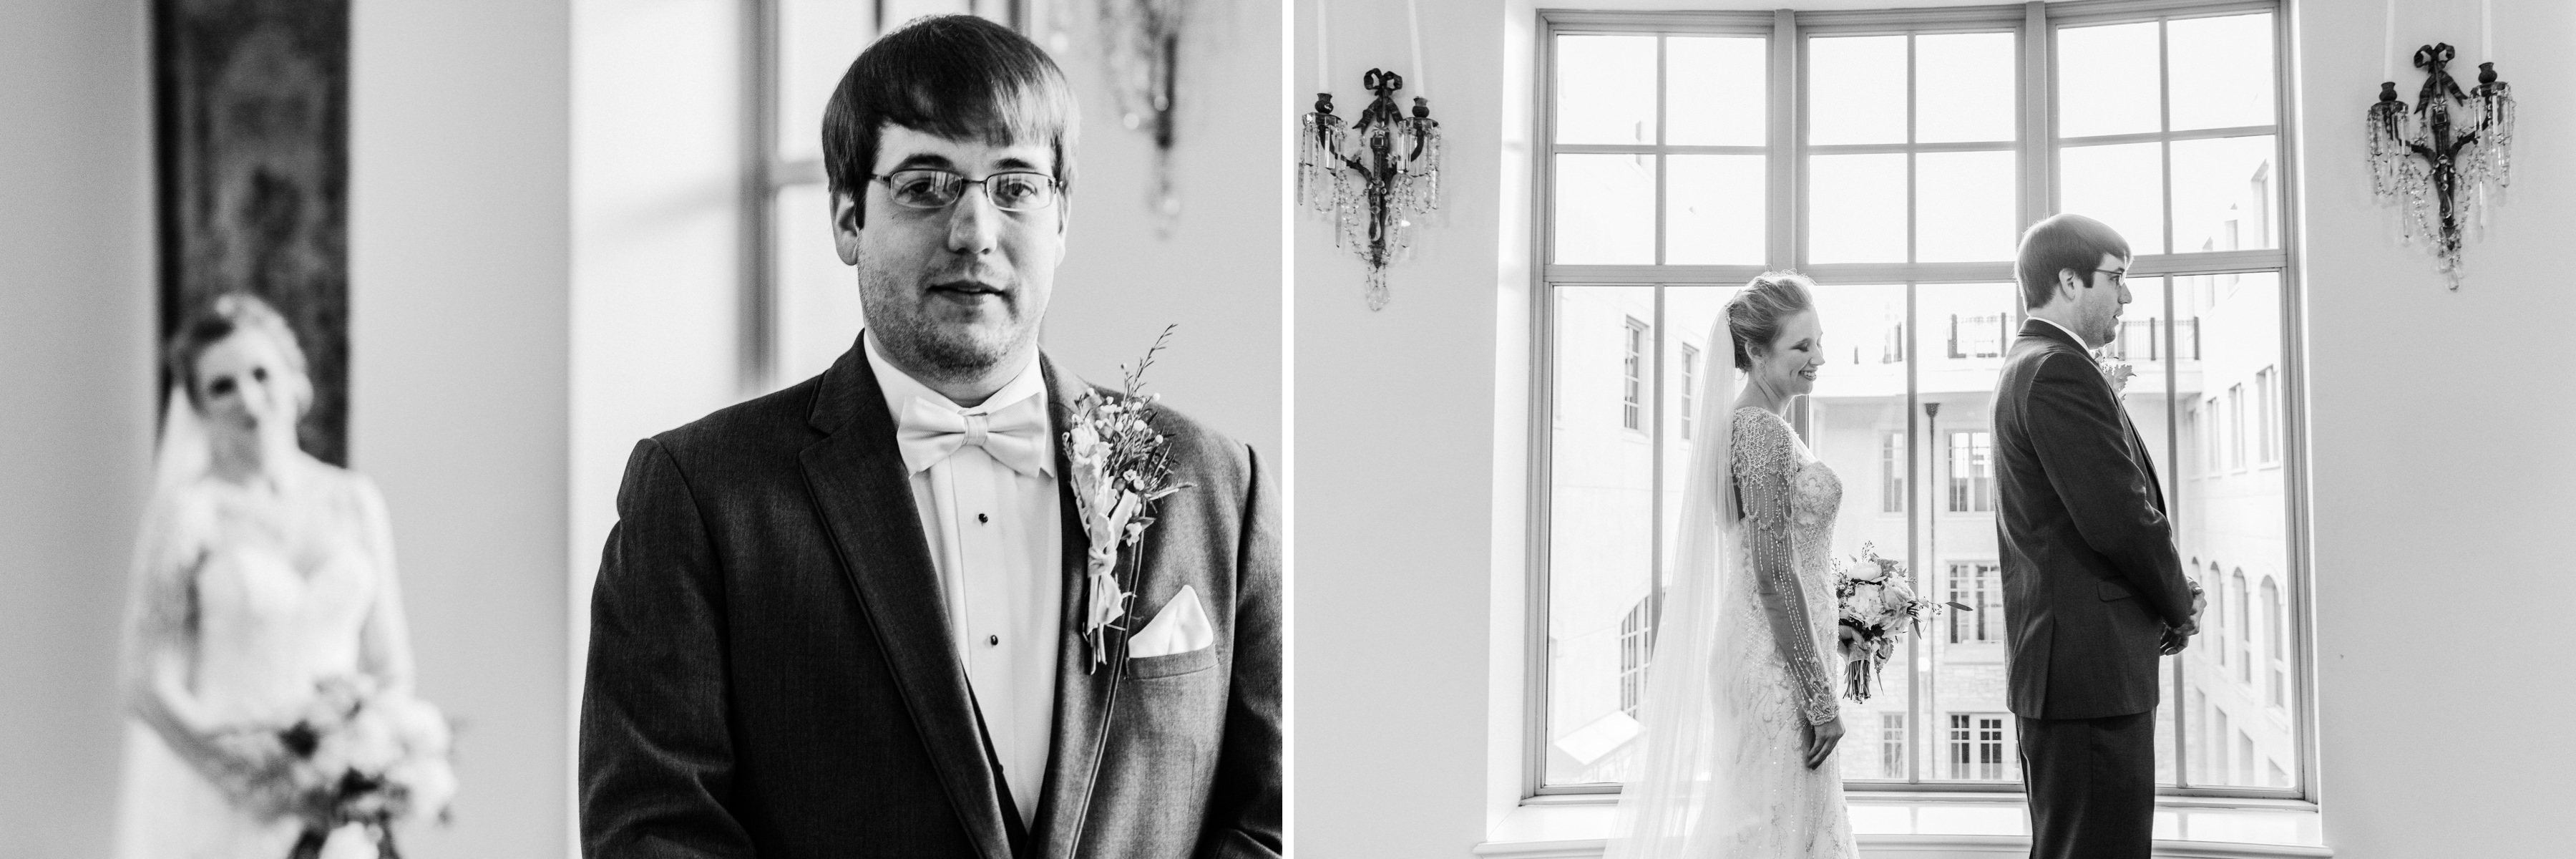 OAKLEY_WEDDING_MONTGOMERY_ALABAMA_WEDDING_PHOTOGRAPHY_33